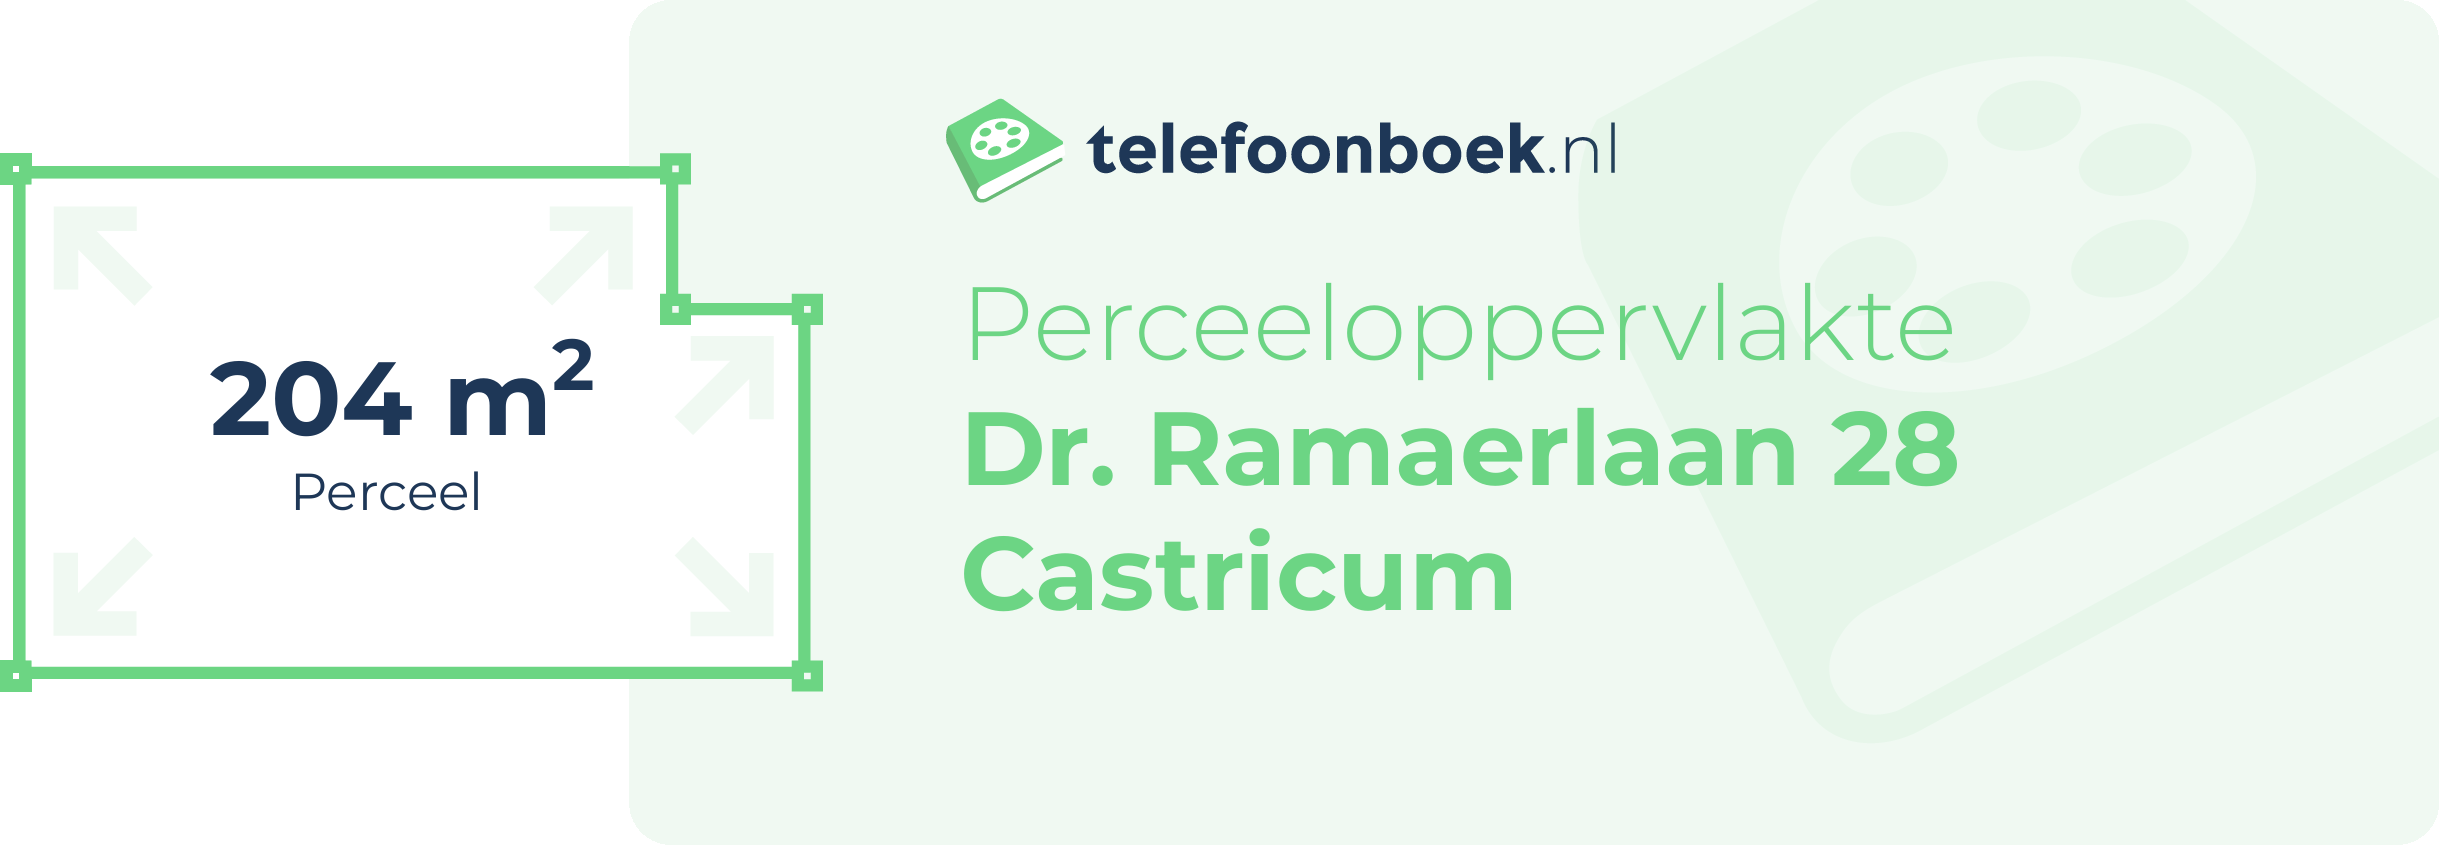 Perceeloppervlakte Dr. Ramaerlaan 28 Castricum